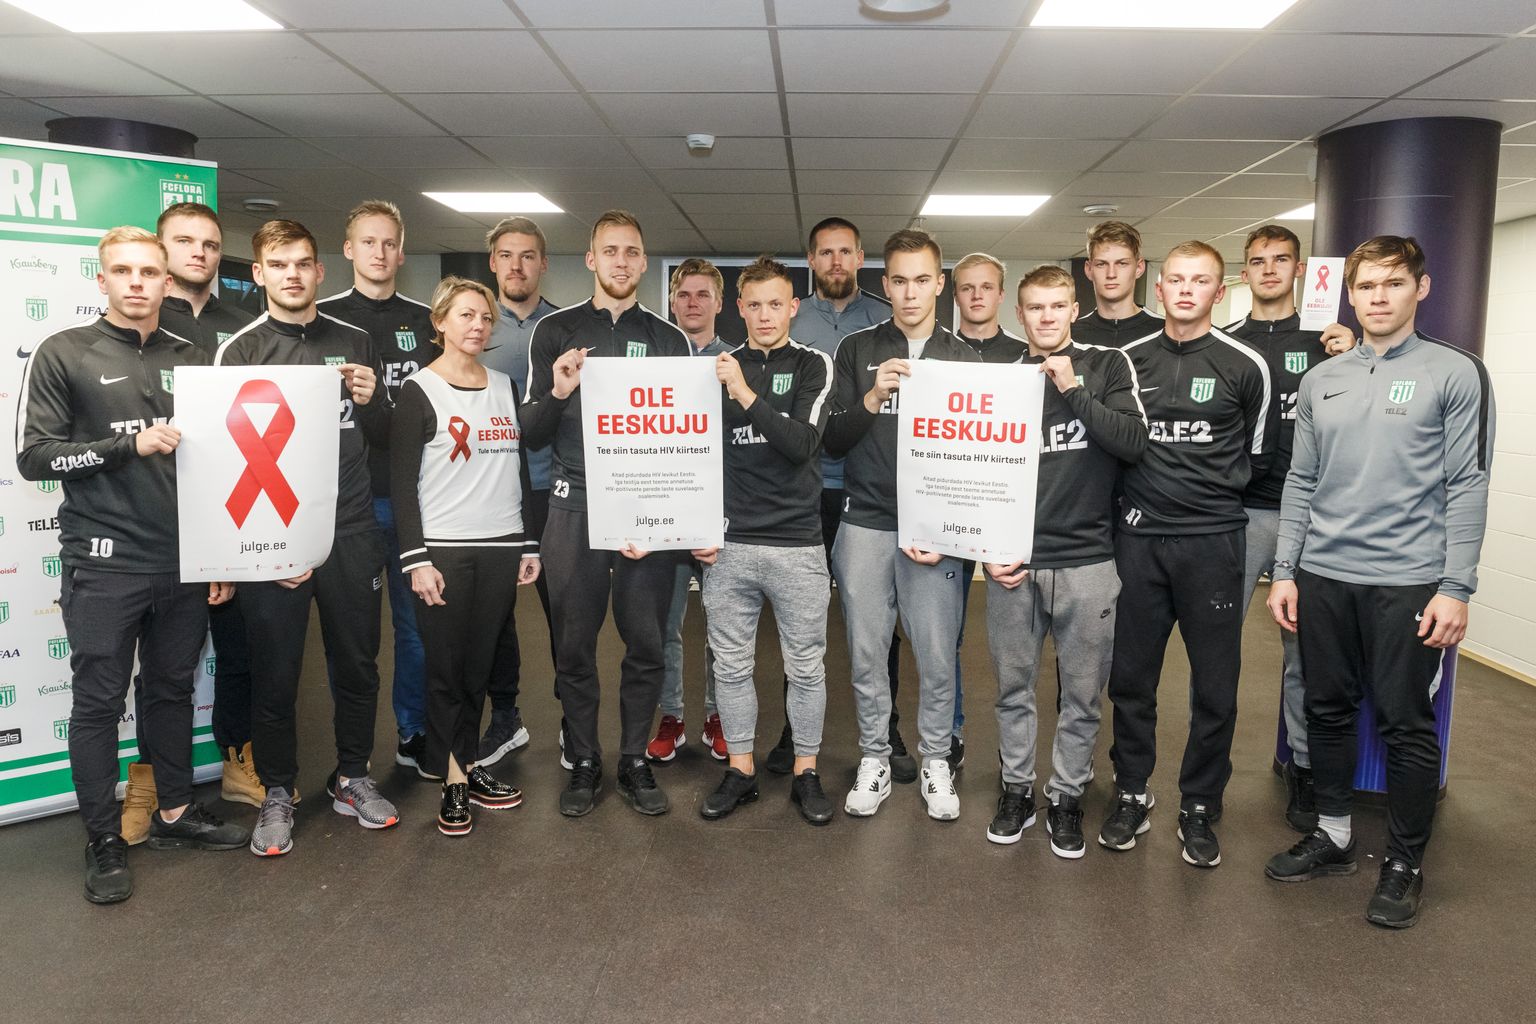 Terviseteadlikku käitumist illustreerival pildil FC Flora jalgpallurid, kes käisid kogu meeskonnaga HIV kiirtesti tegemas (Lilleküla Staadion, Tallinn, 12.11.2018)